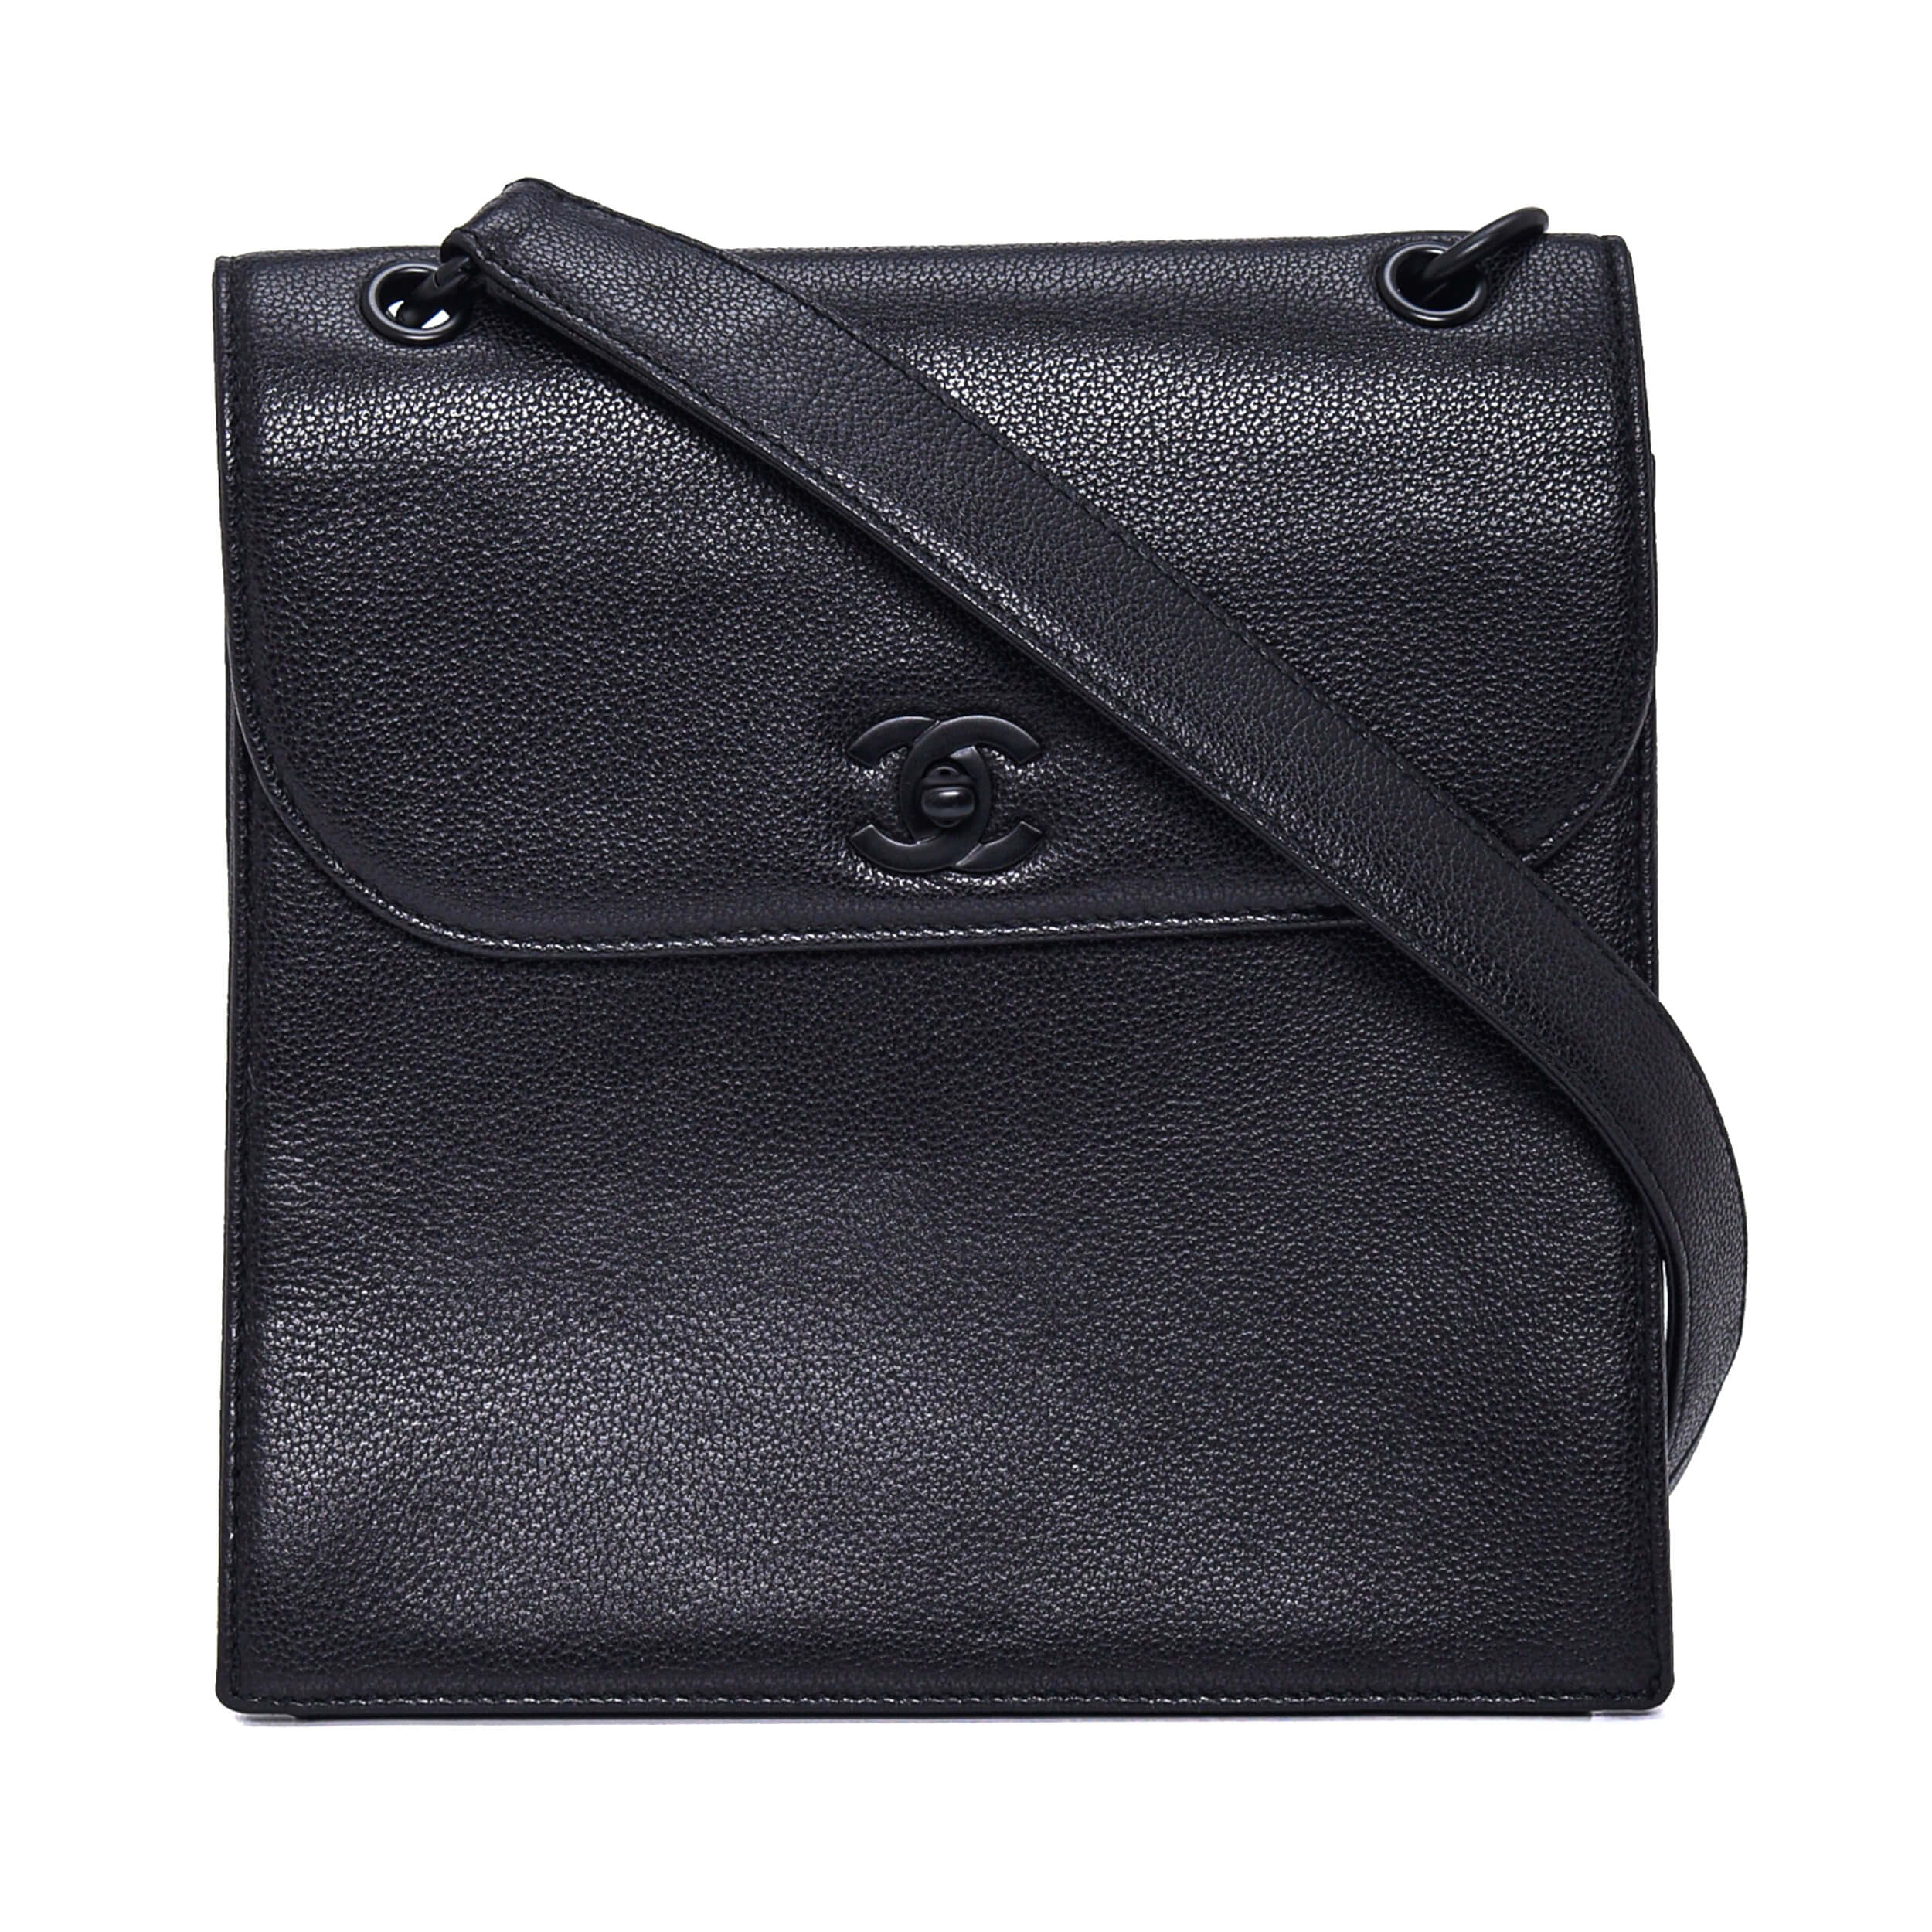 Chanel - Black Caviar Leather Vintage Square Shoulder Bag